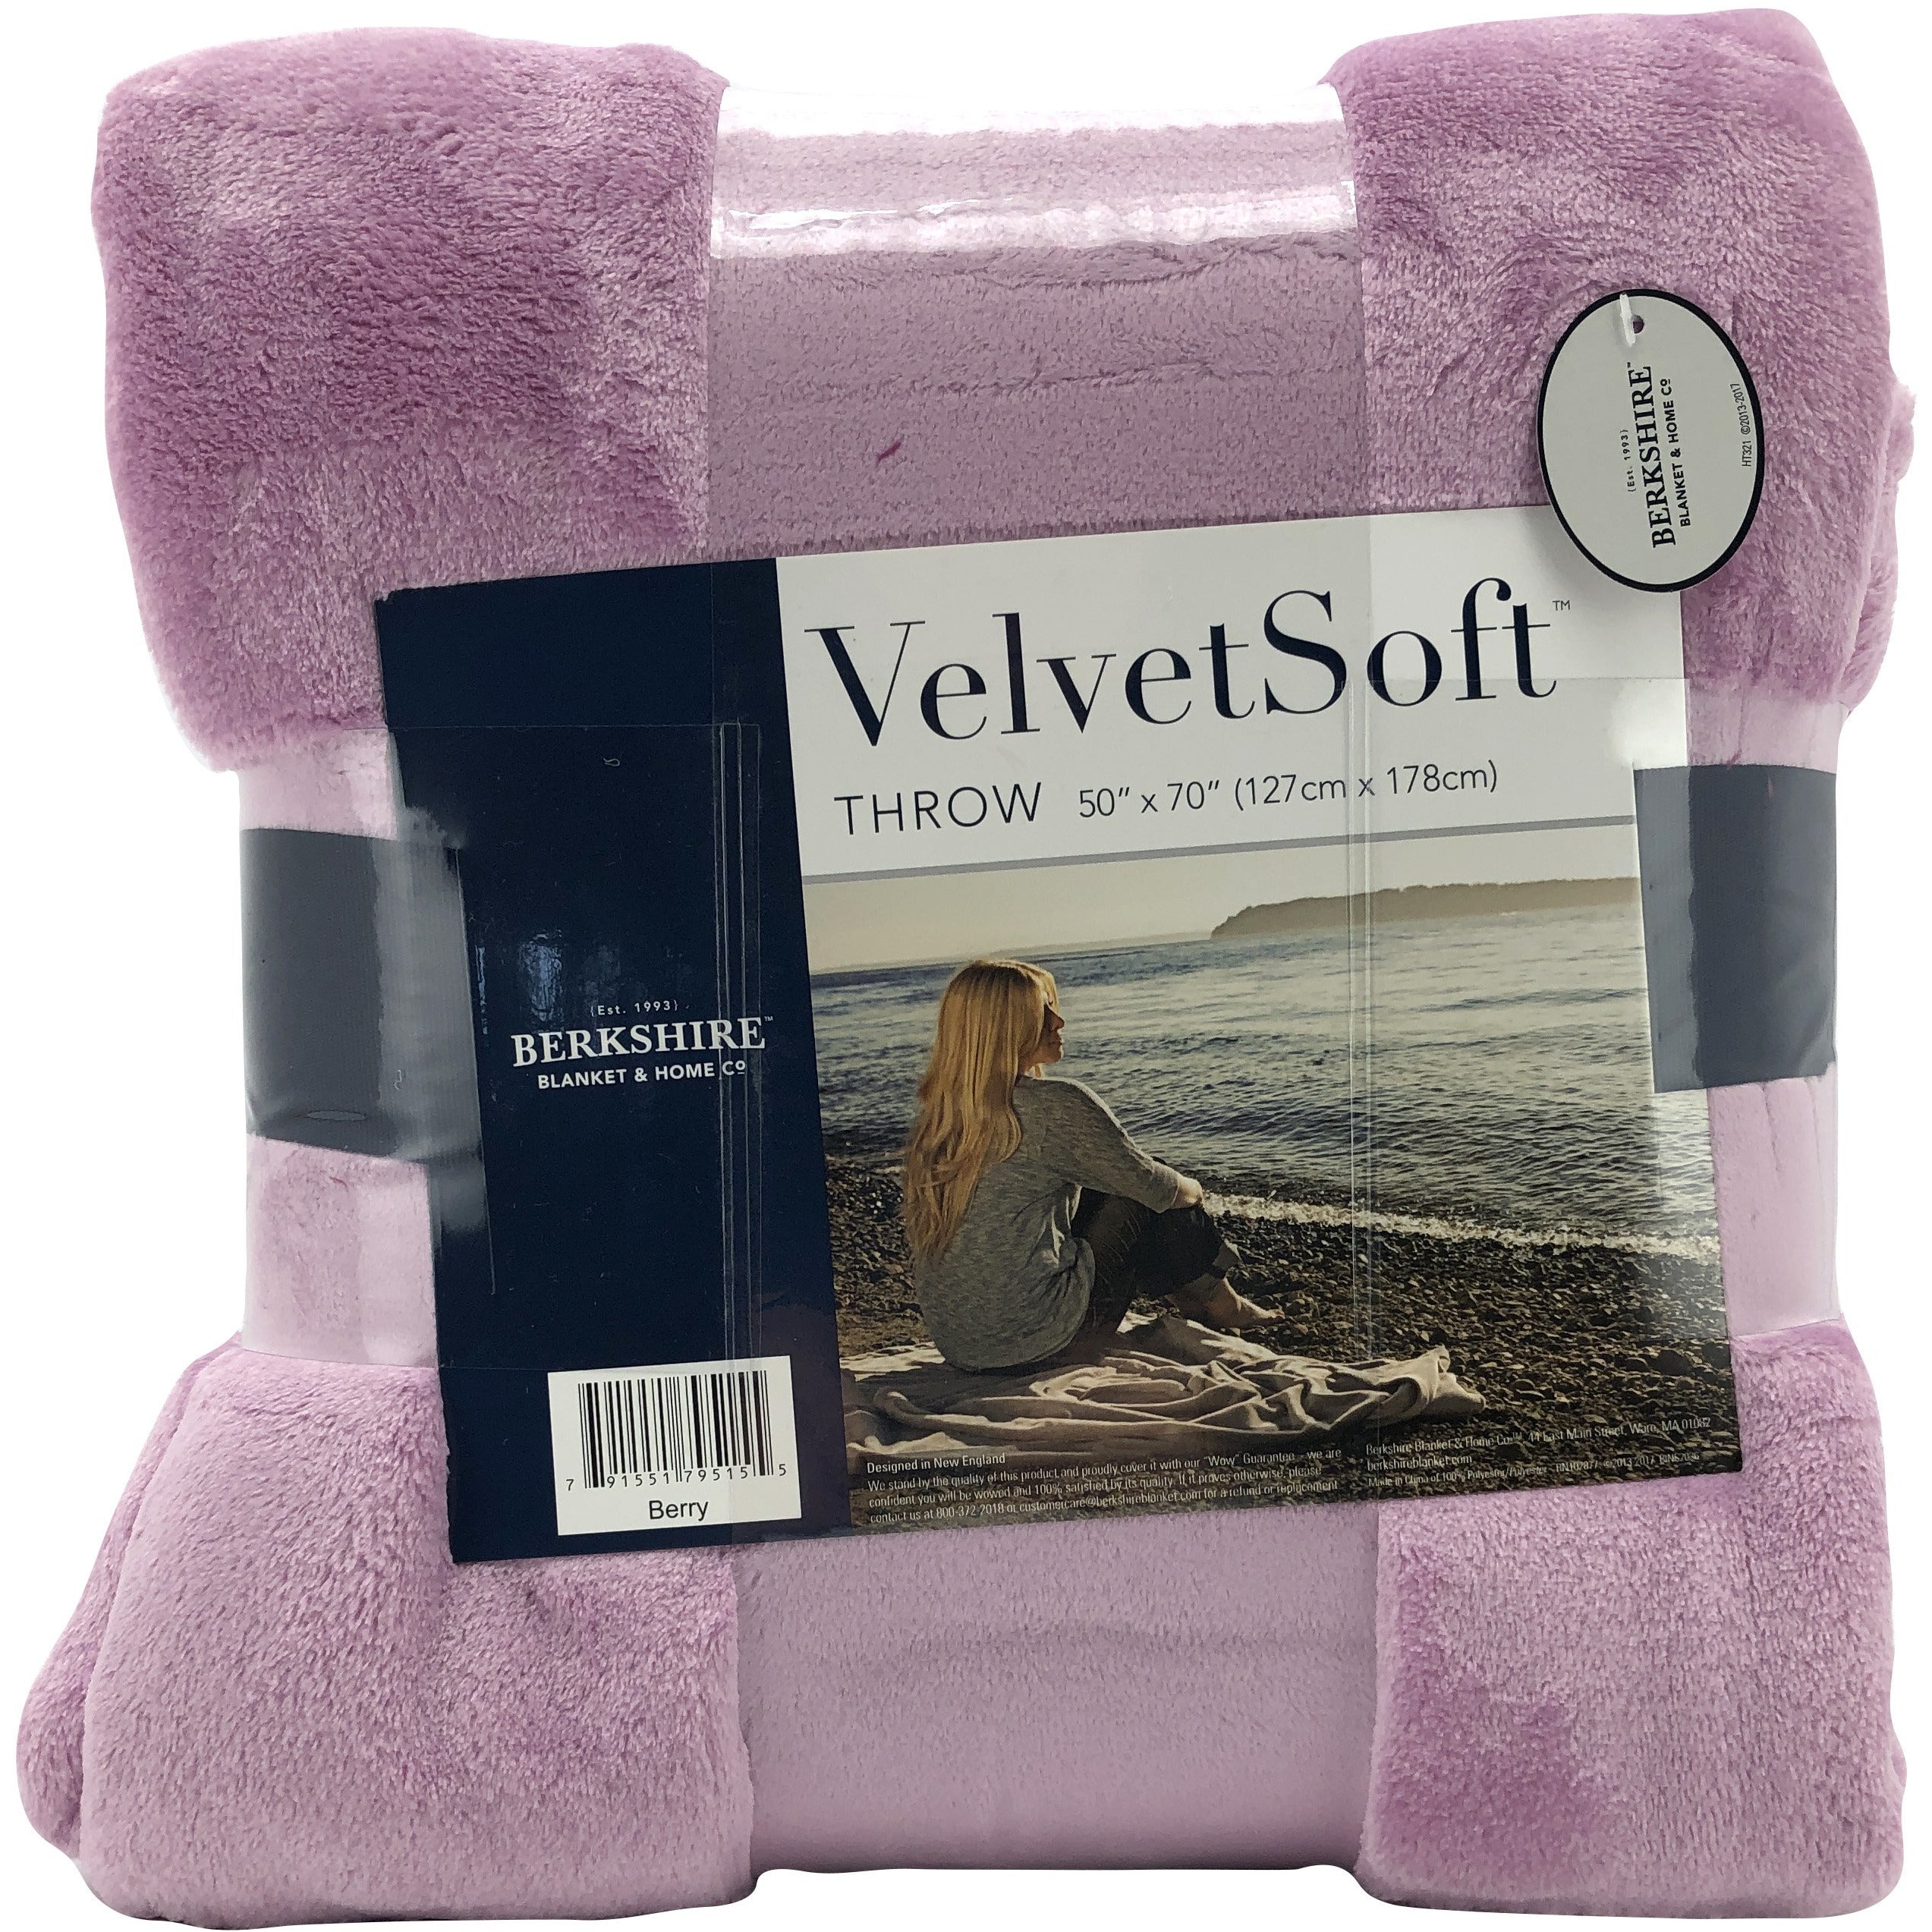 Berkshire Velvet Soft Throw Blanket Gift Pack / 3 Pack / Plush / 50"x 70" / Gradient Colour / Home Accent